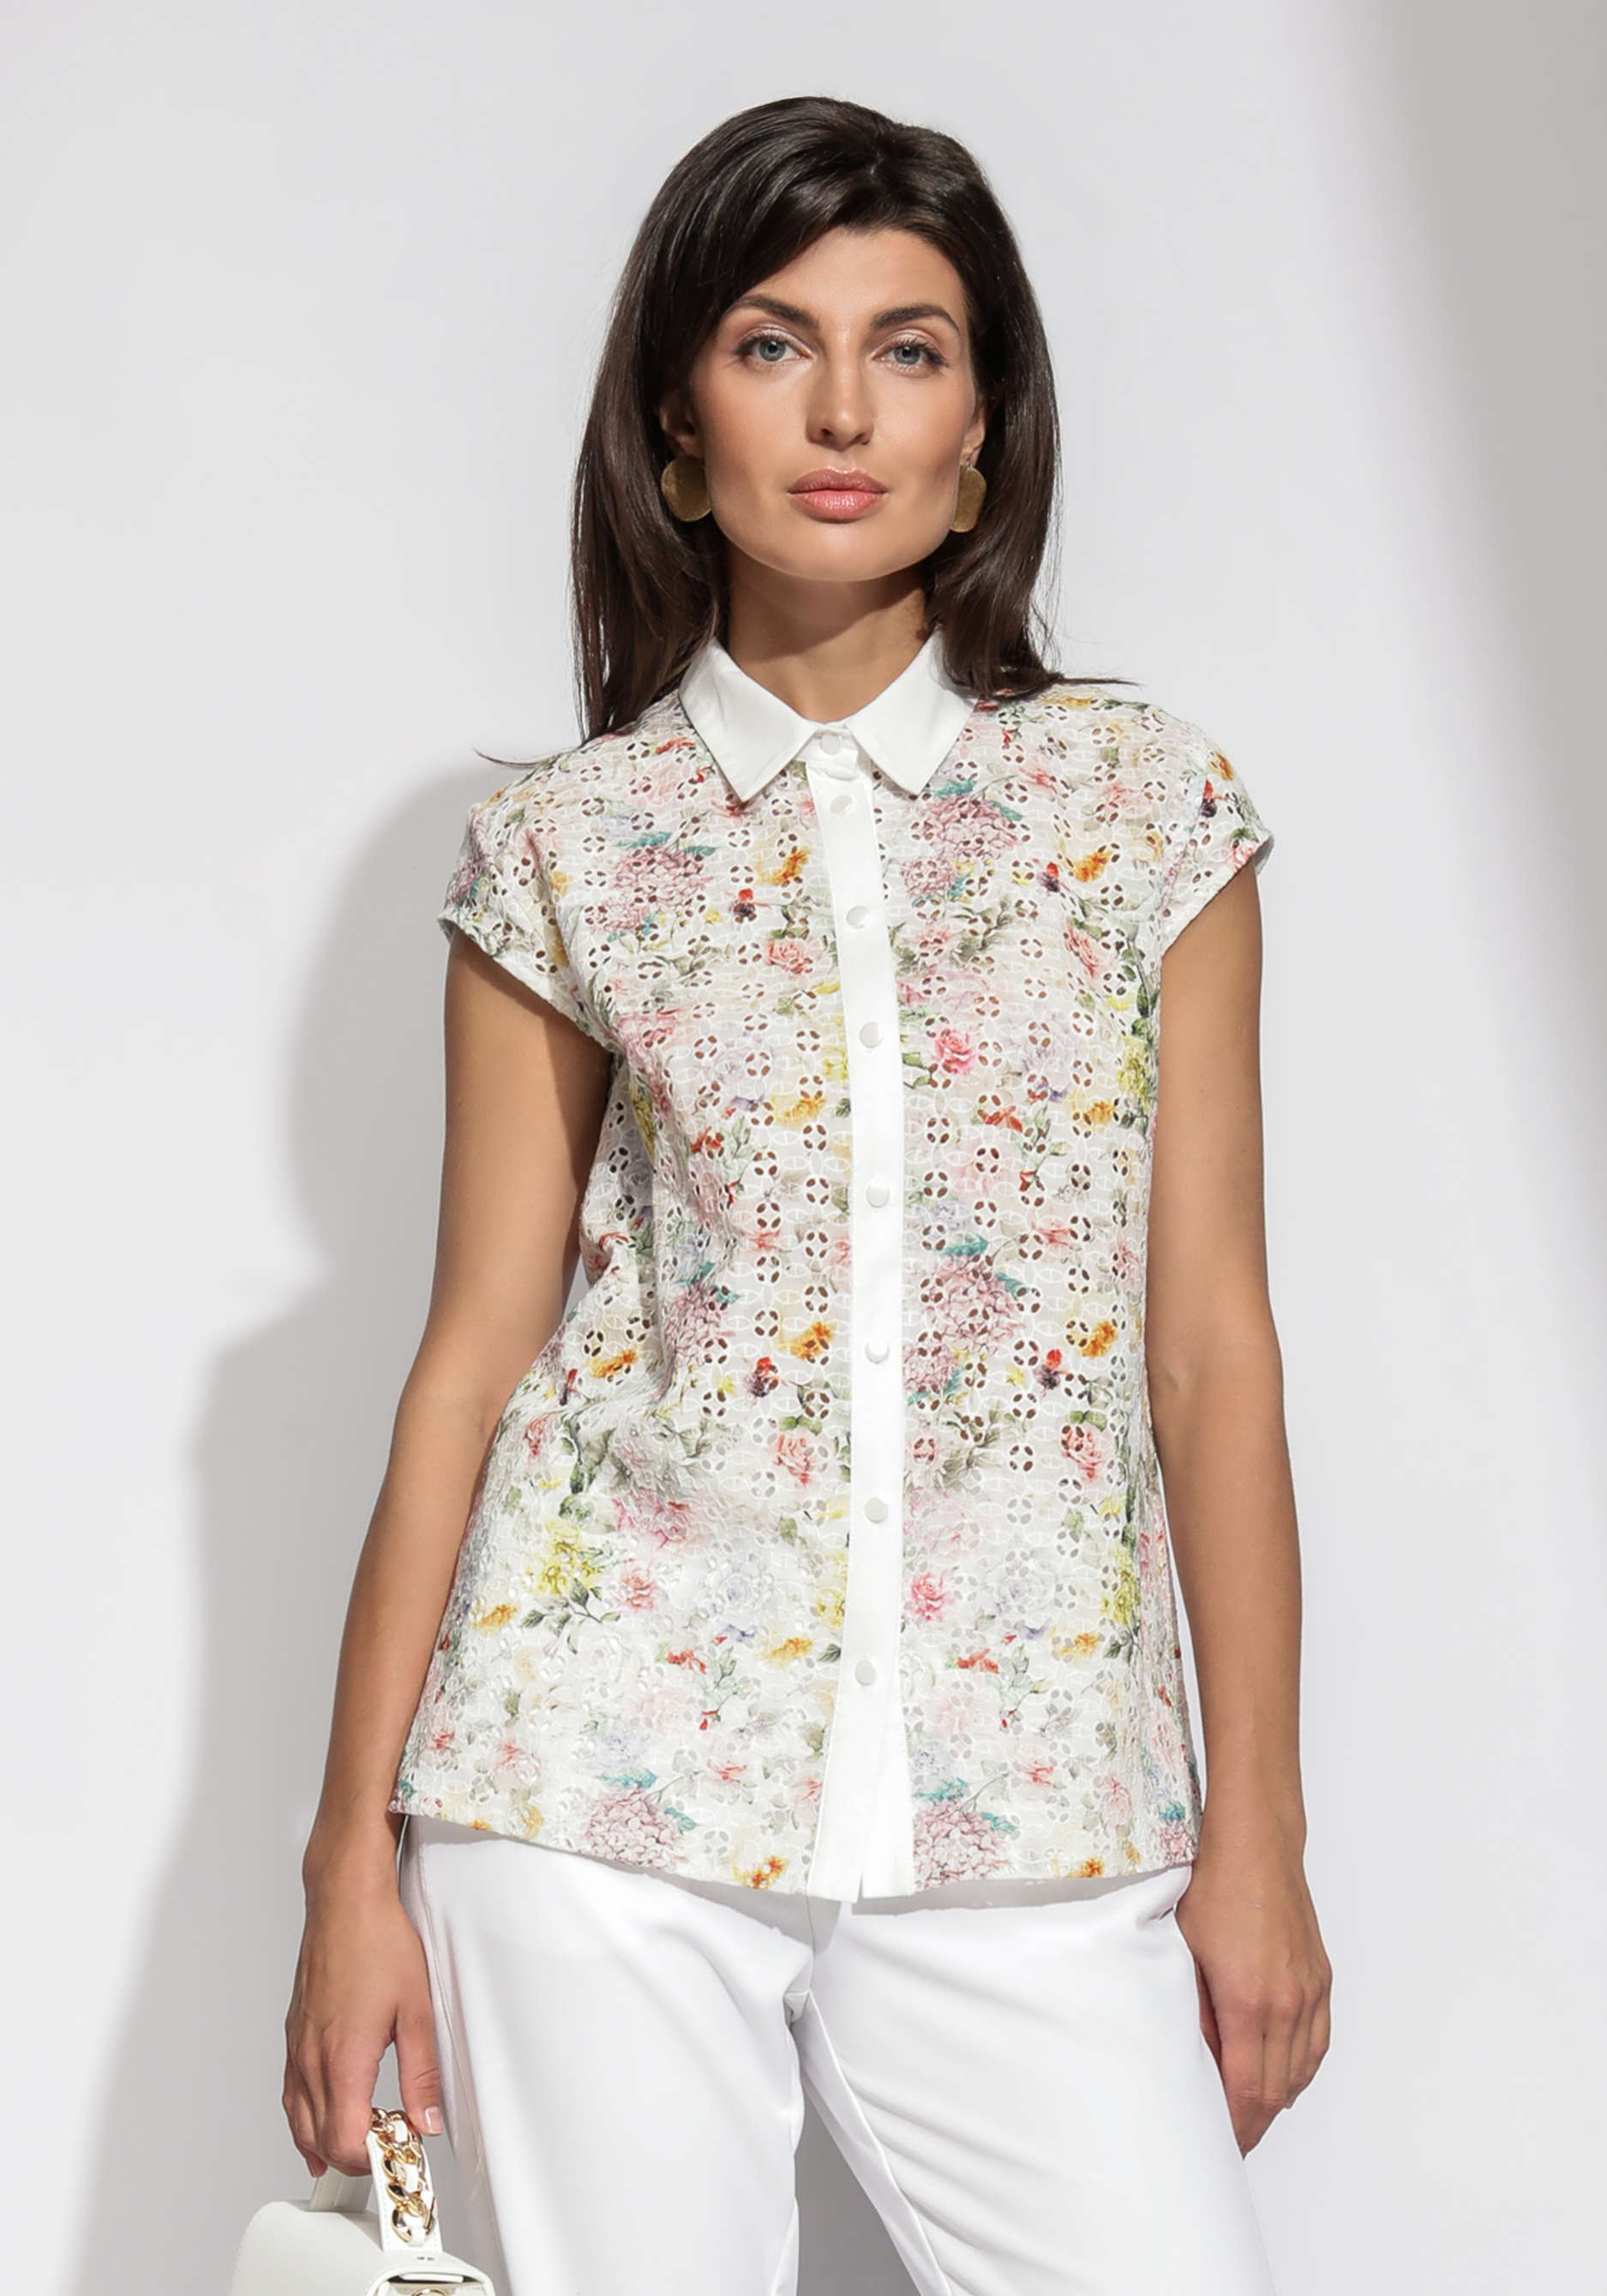 Блузка из шитья с цветочным принтом комплект женский туника блузка